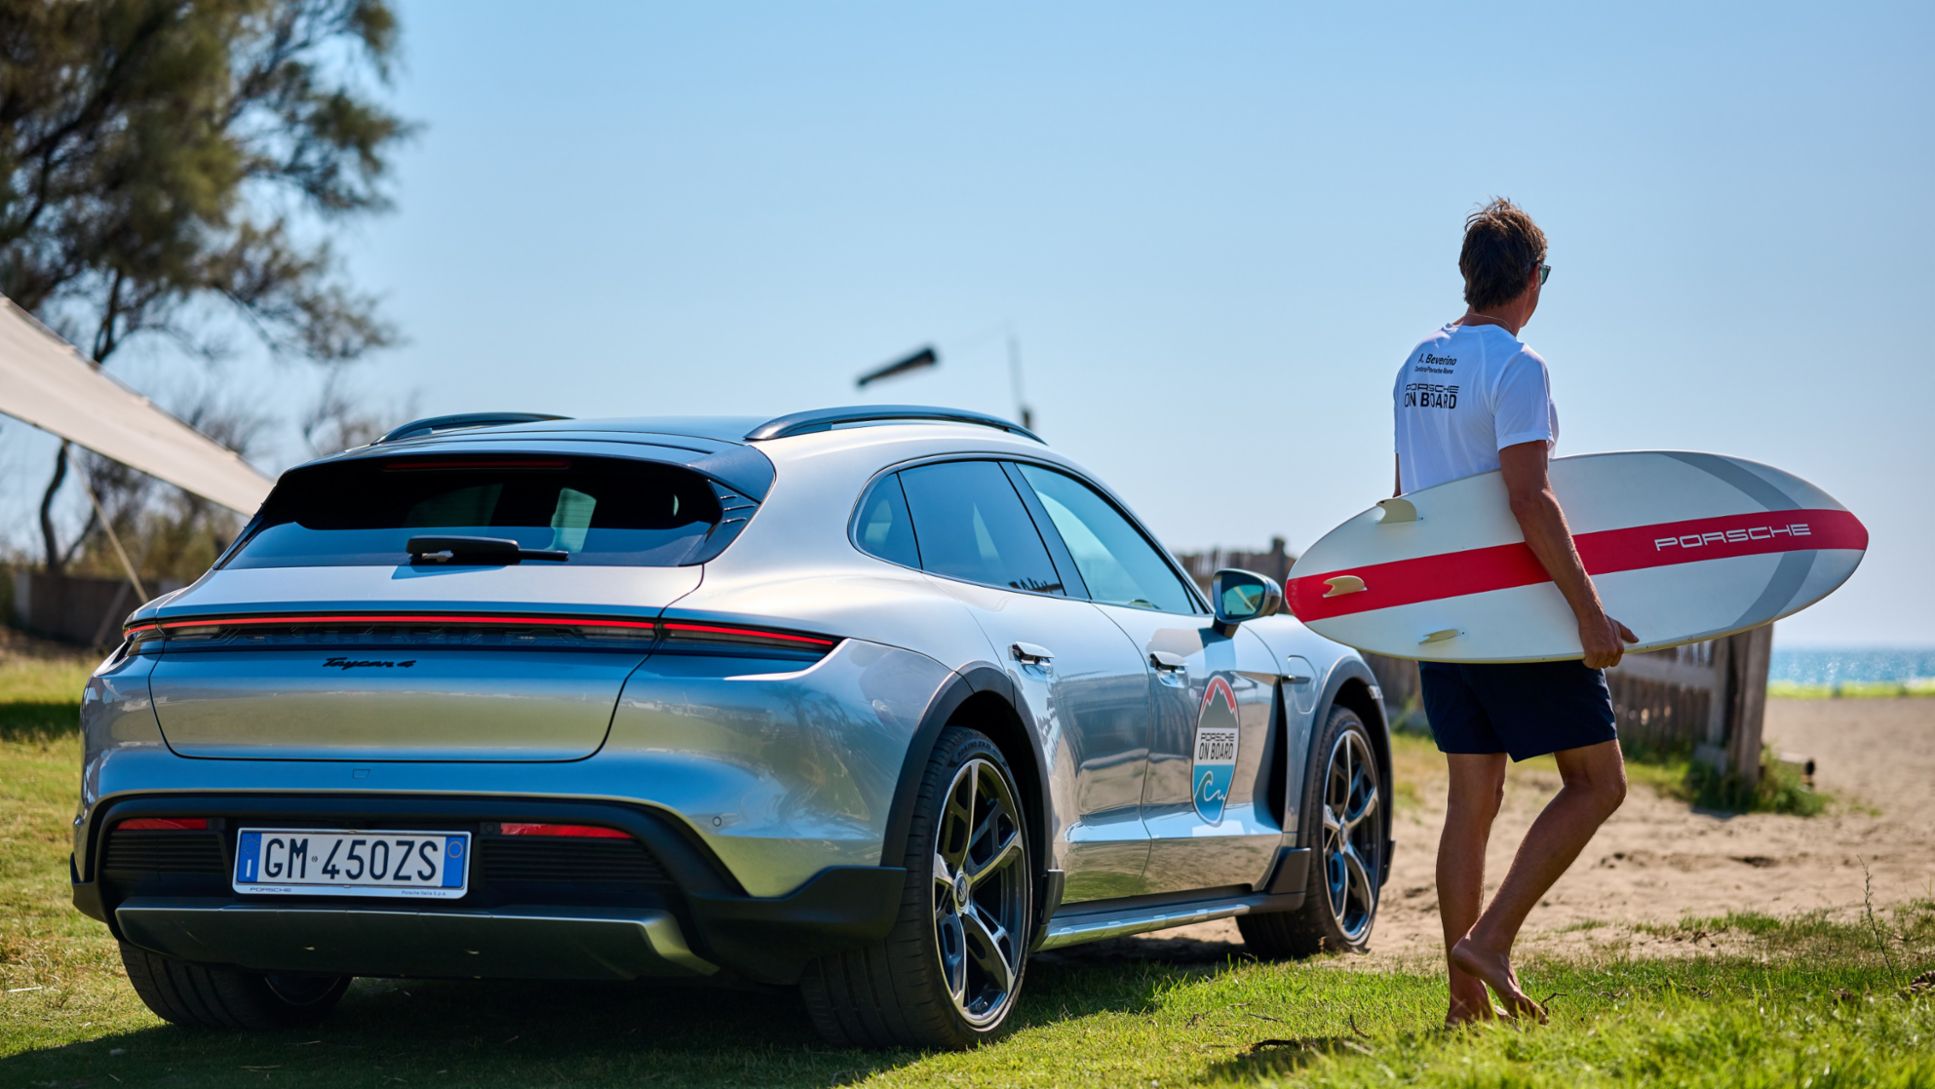 Torna l’estate adrenalinica di ‟Porsche on Board” tra sport, avventura ed E-performance